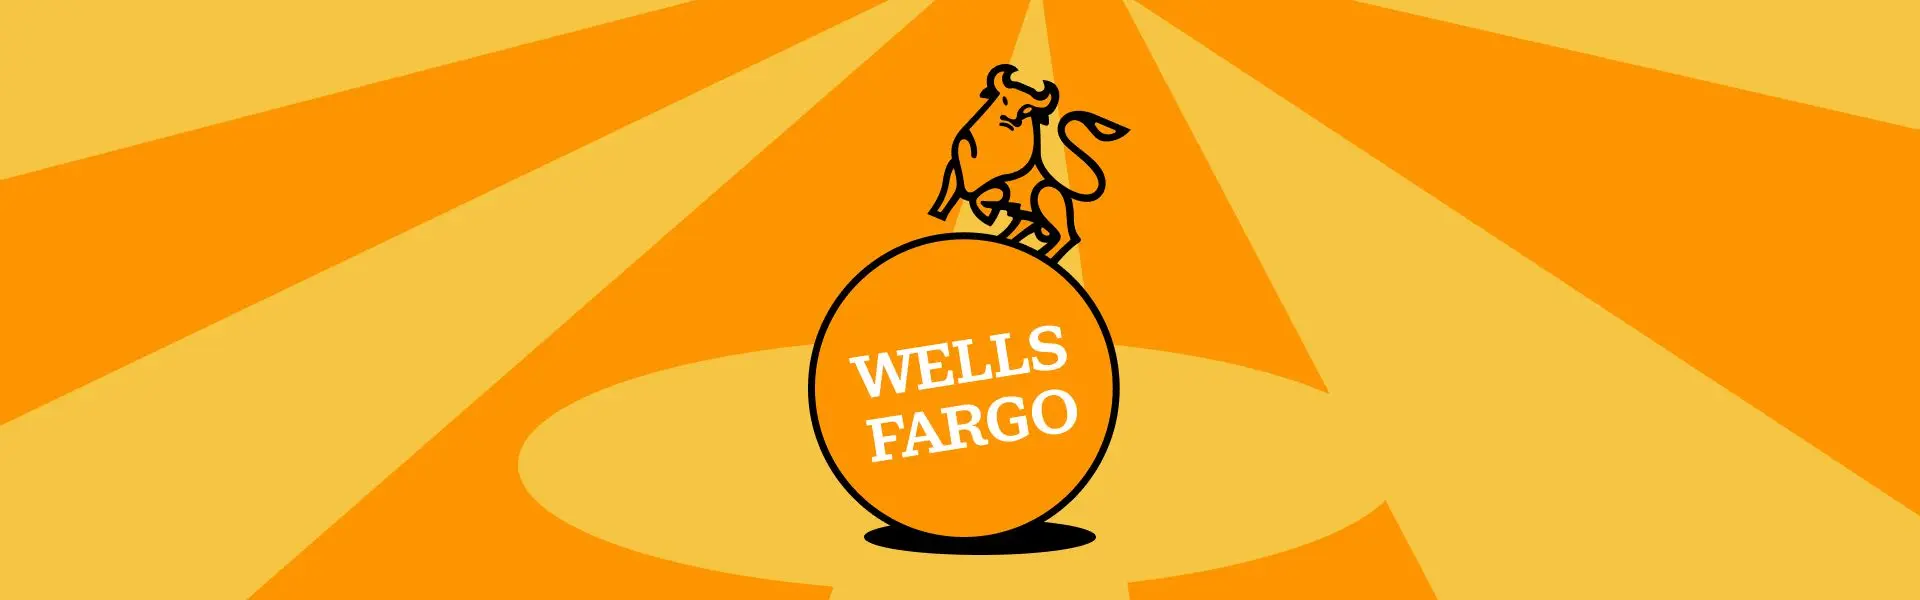 Представники компаній Merrill Lynch та Wells Fargo пропонують доступ до інвестицій в біткоїн через ETF.